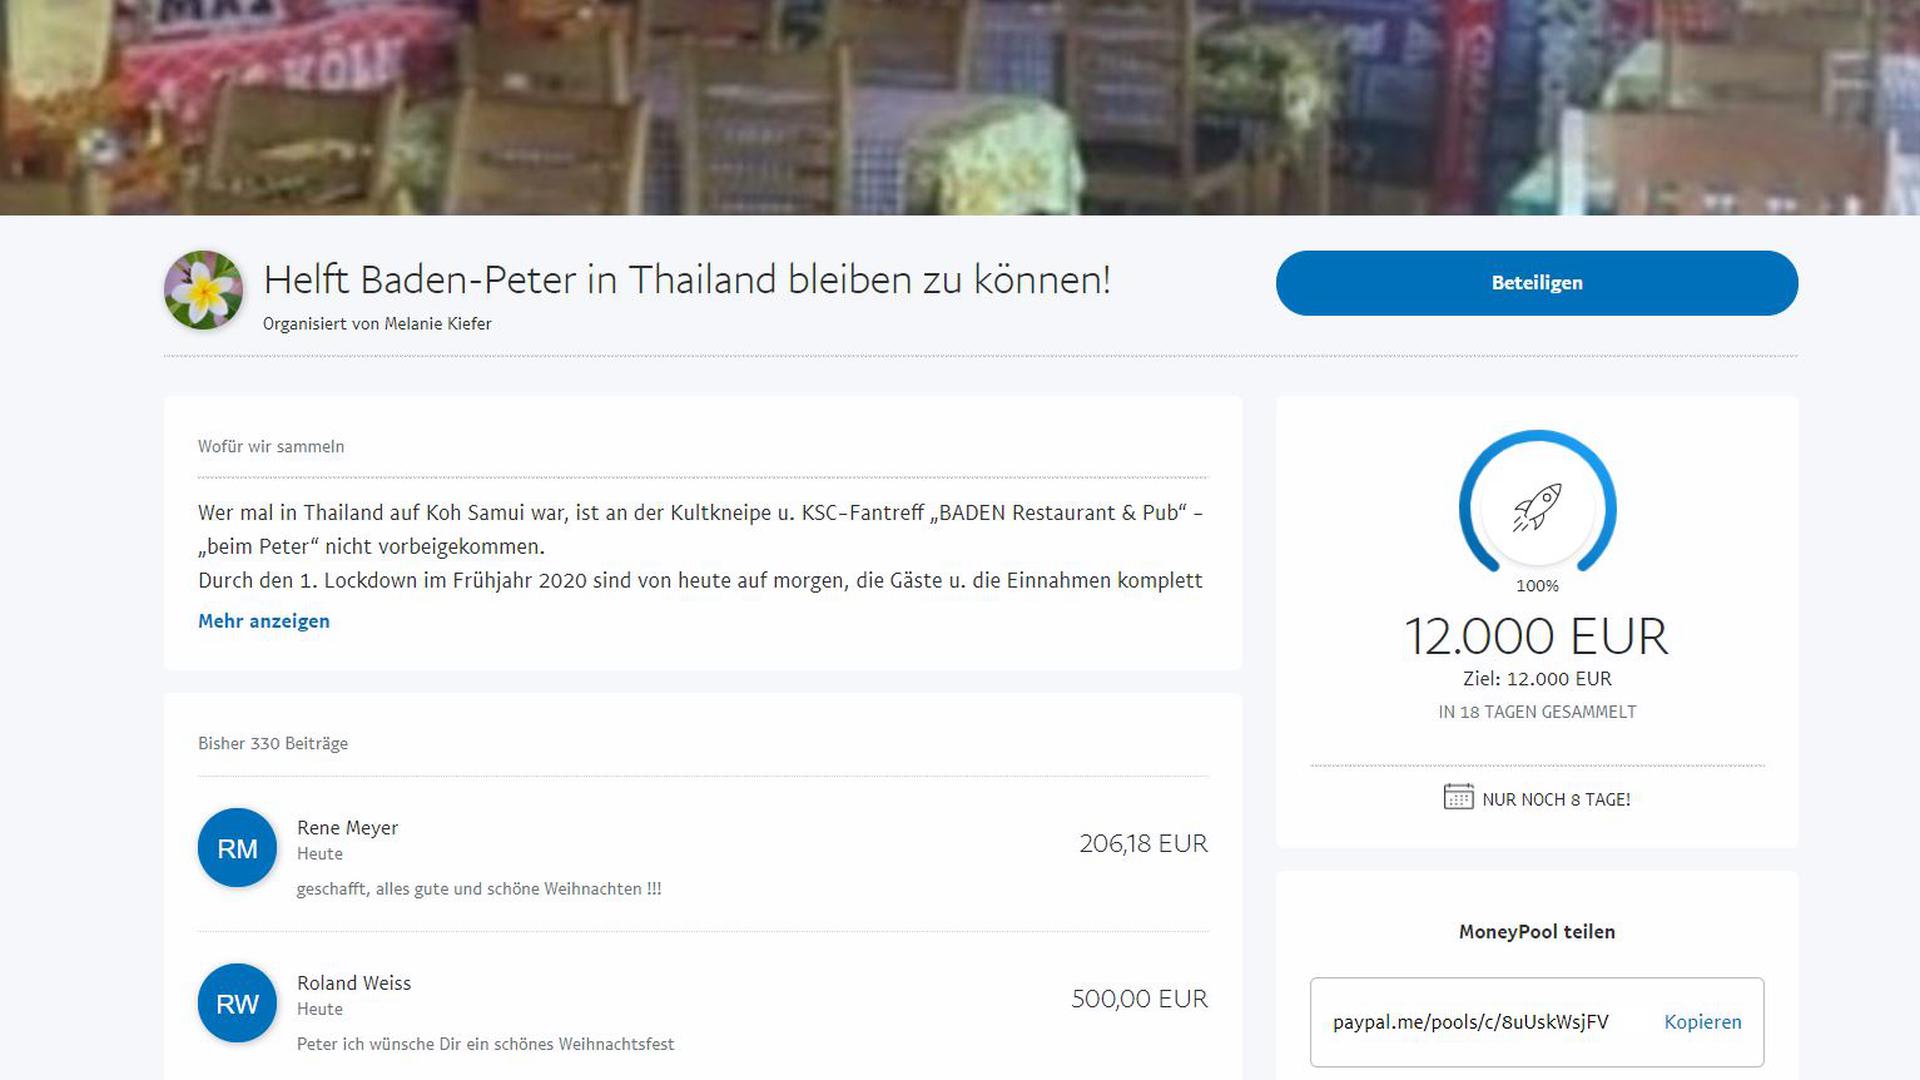 Innerhalb von 18 Tagen sammelten die Unterstützer insgesamt 12.000 Euro für Peter Wrzesinski.